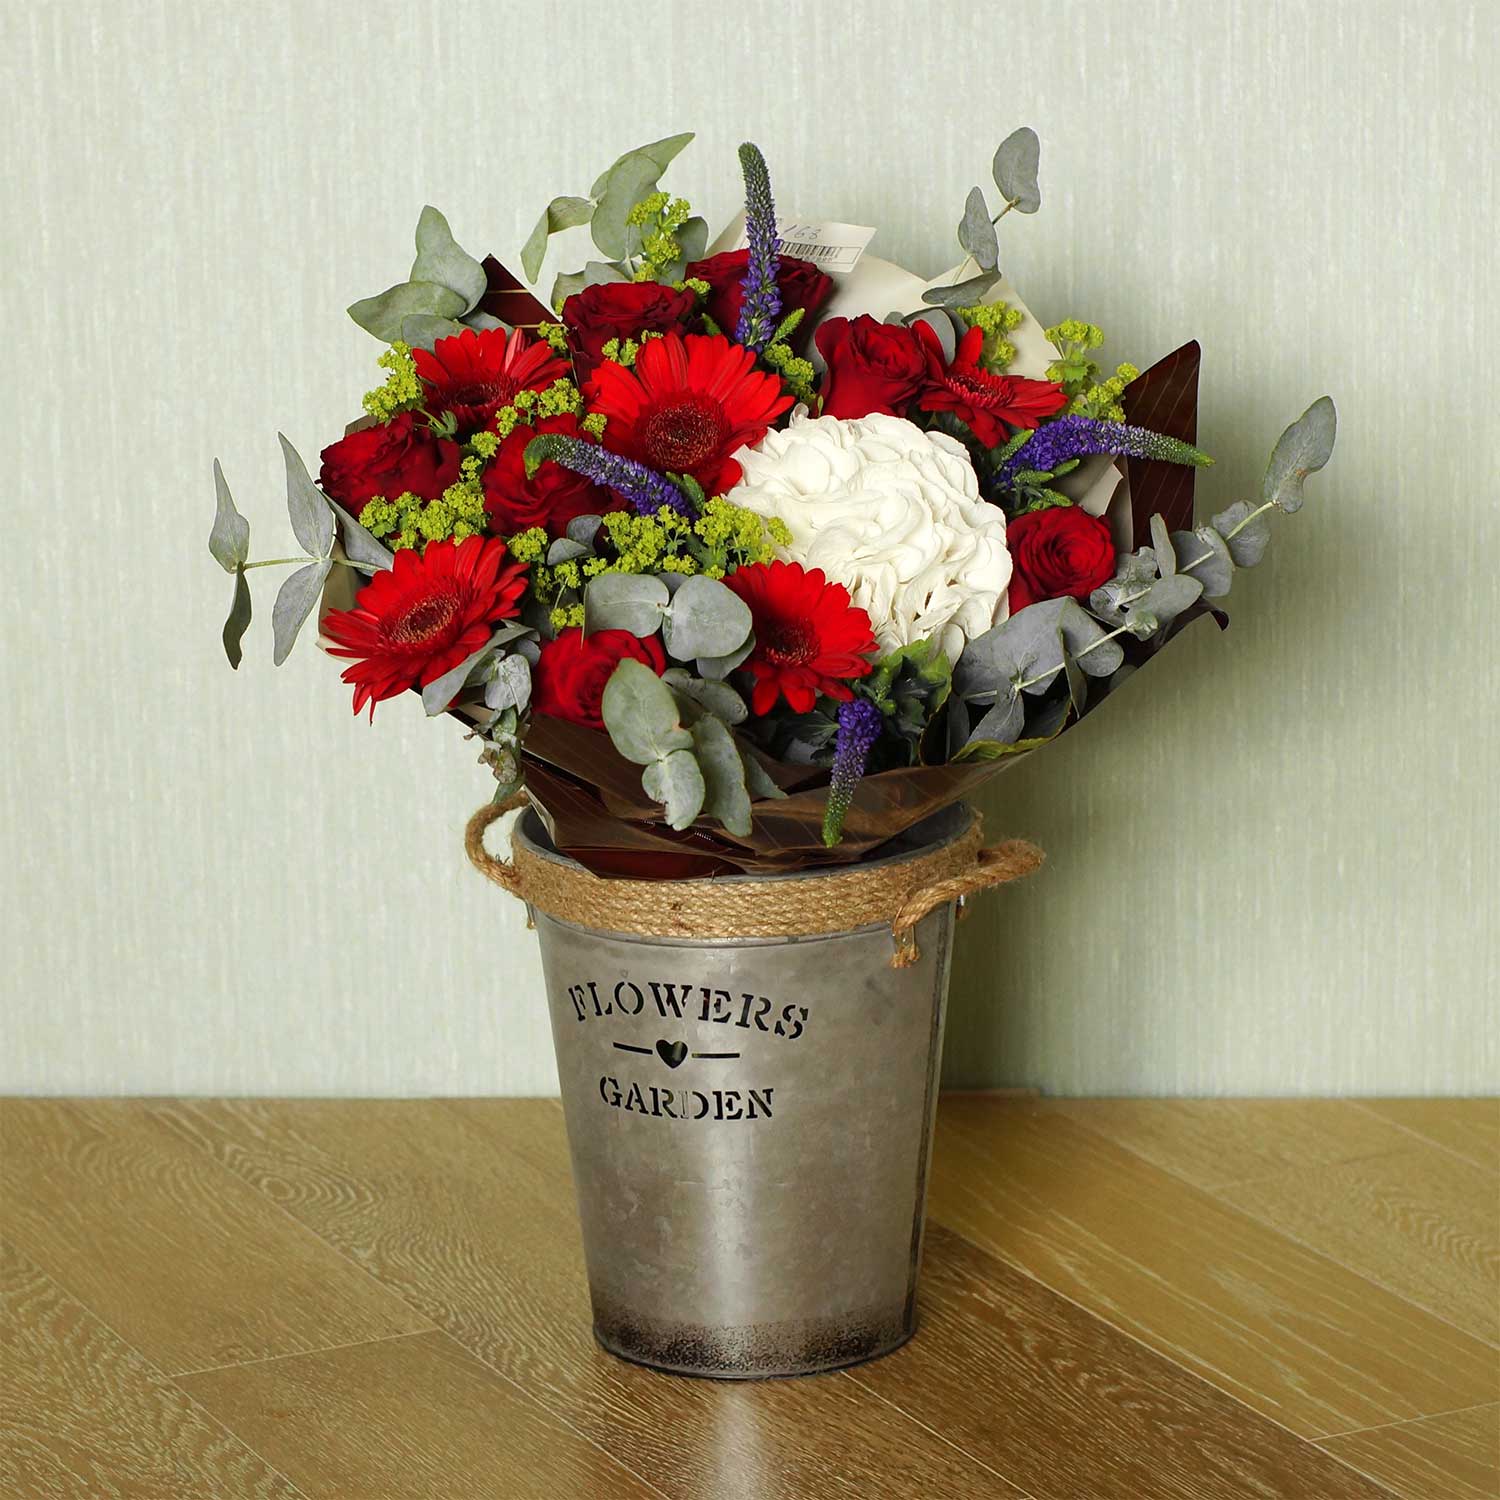 Гортензии, герберы и розы в осеннем букете "Моменто" - Купить цветы